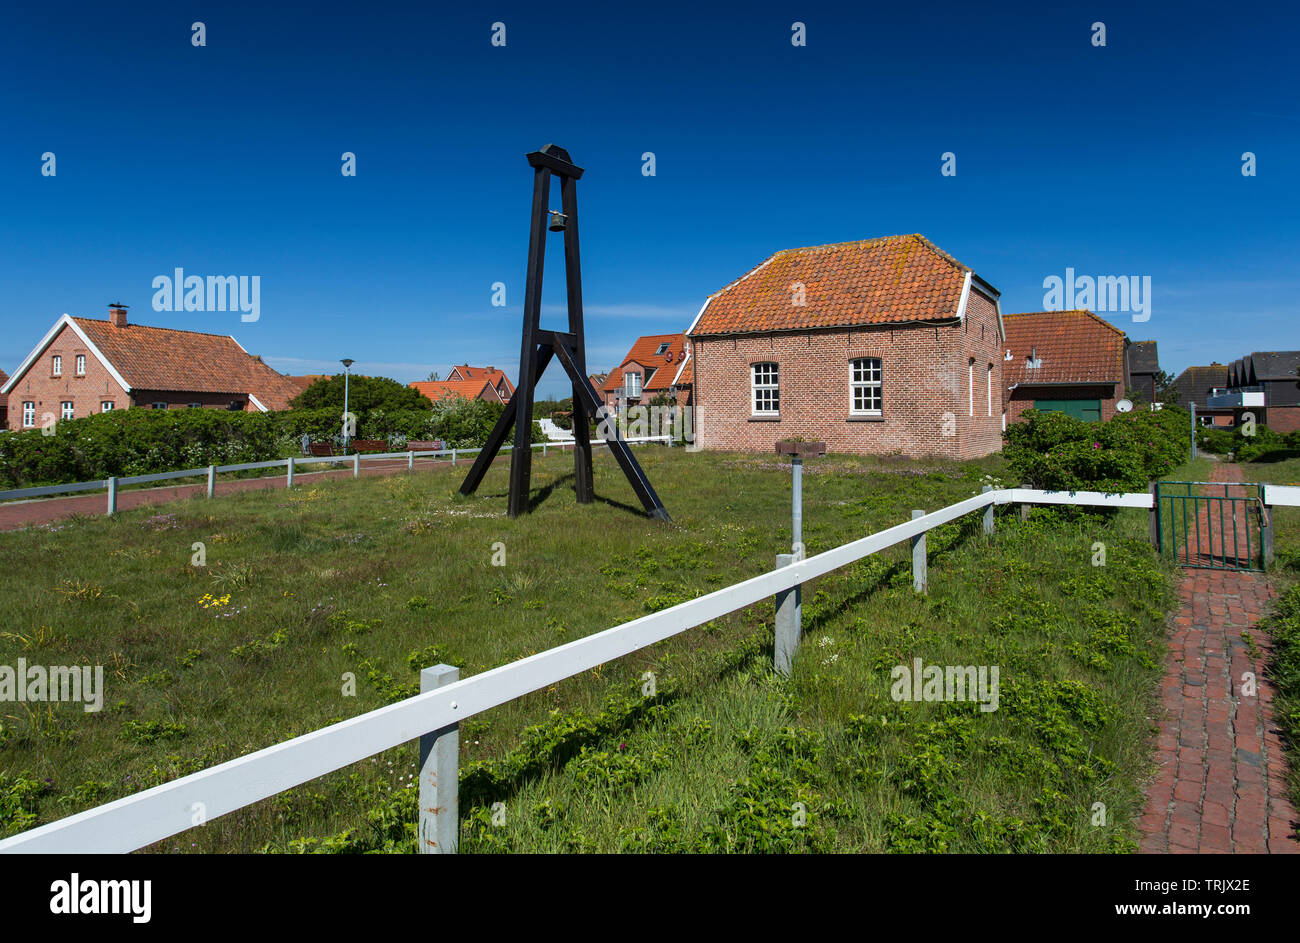 L'image montre une église sur l'île d'Baltrum-Germany Banque D'Images